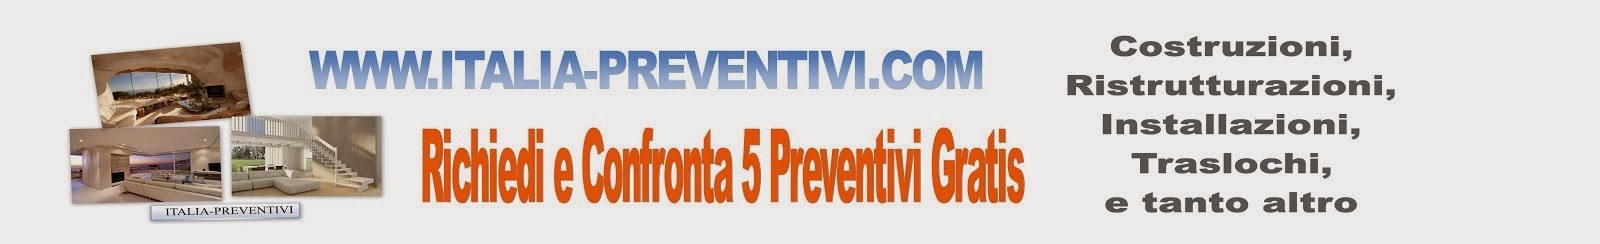 Con 1 click richiedi e Confronti 5 Preventivi Gratis